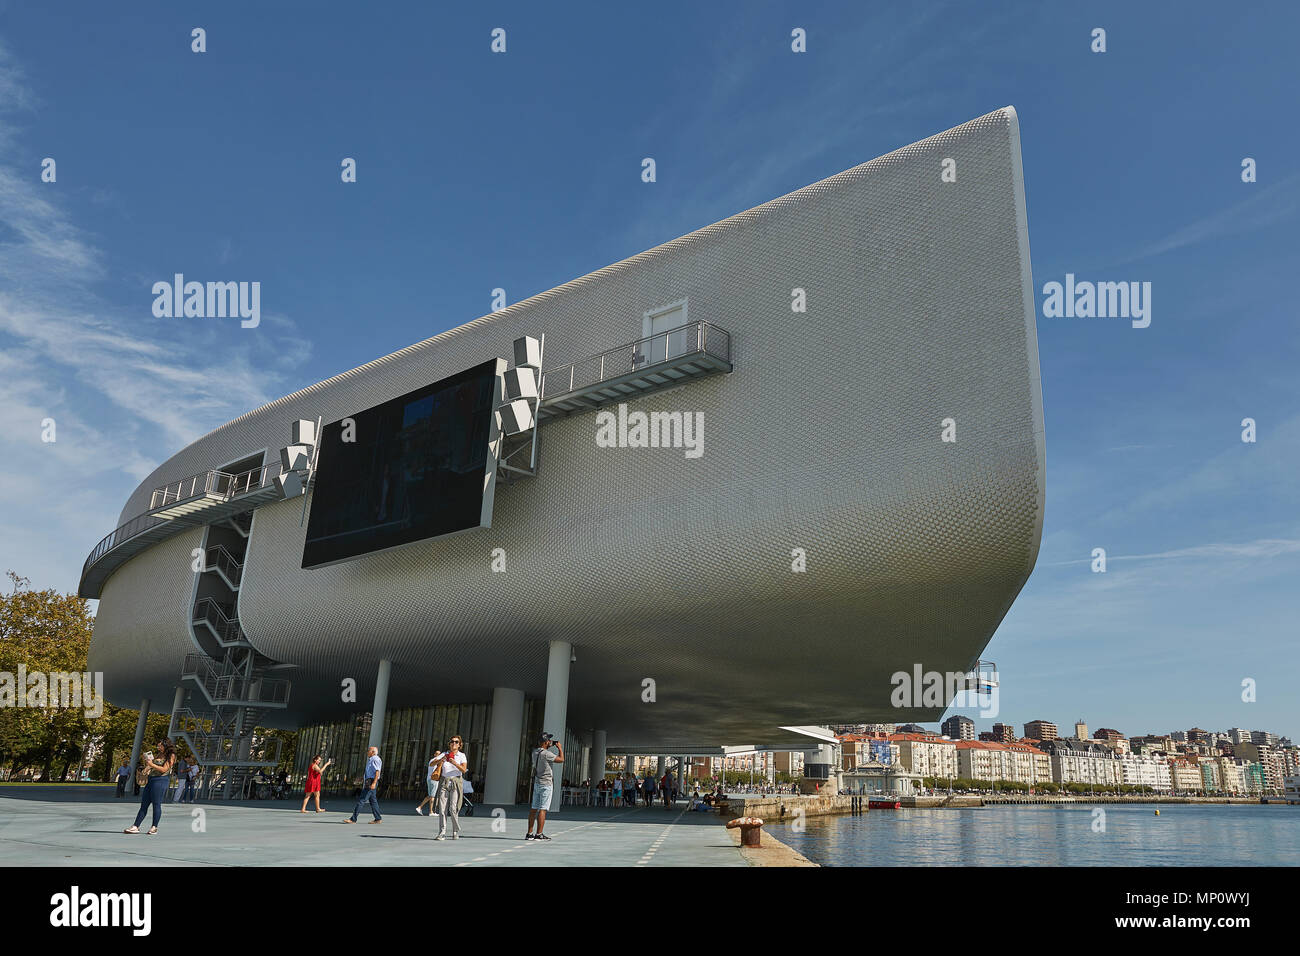 SANTANDER, SPANIEN - 29. SEPTEMBER 2017: Centro Botin oder Botin Center wurde vom italienischen Architekten Renzo Piano entworfen und es ist kulturelle Einrichtung Gebäude Stockfoto